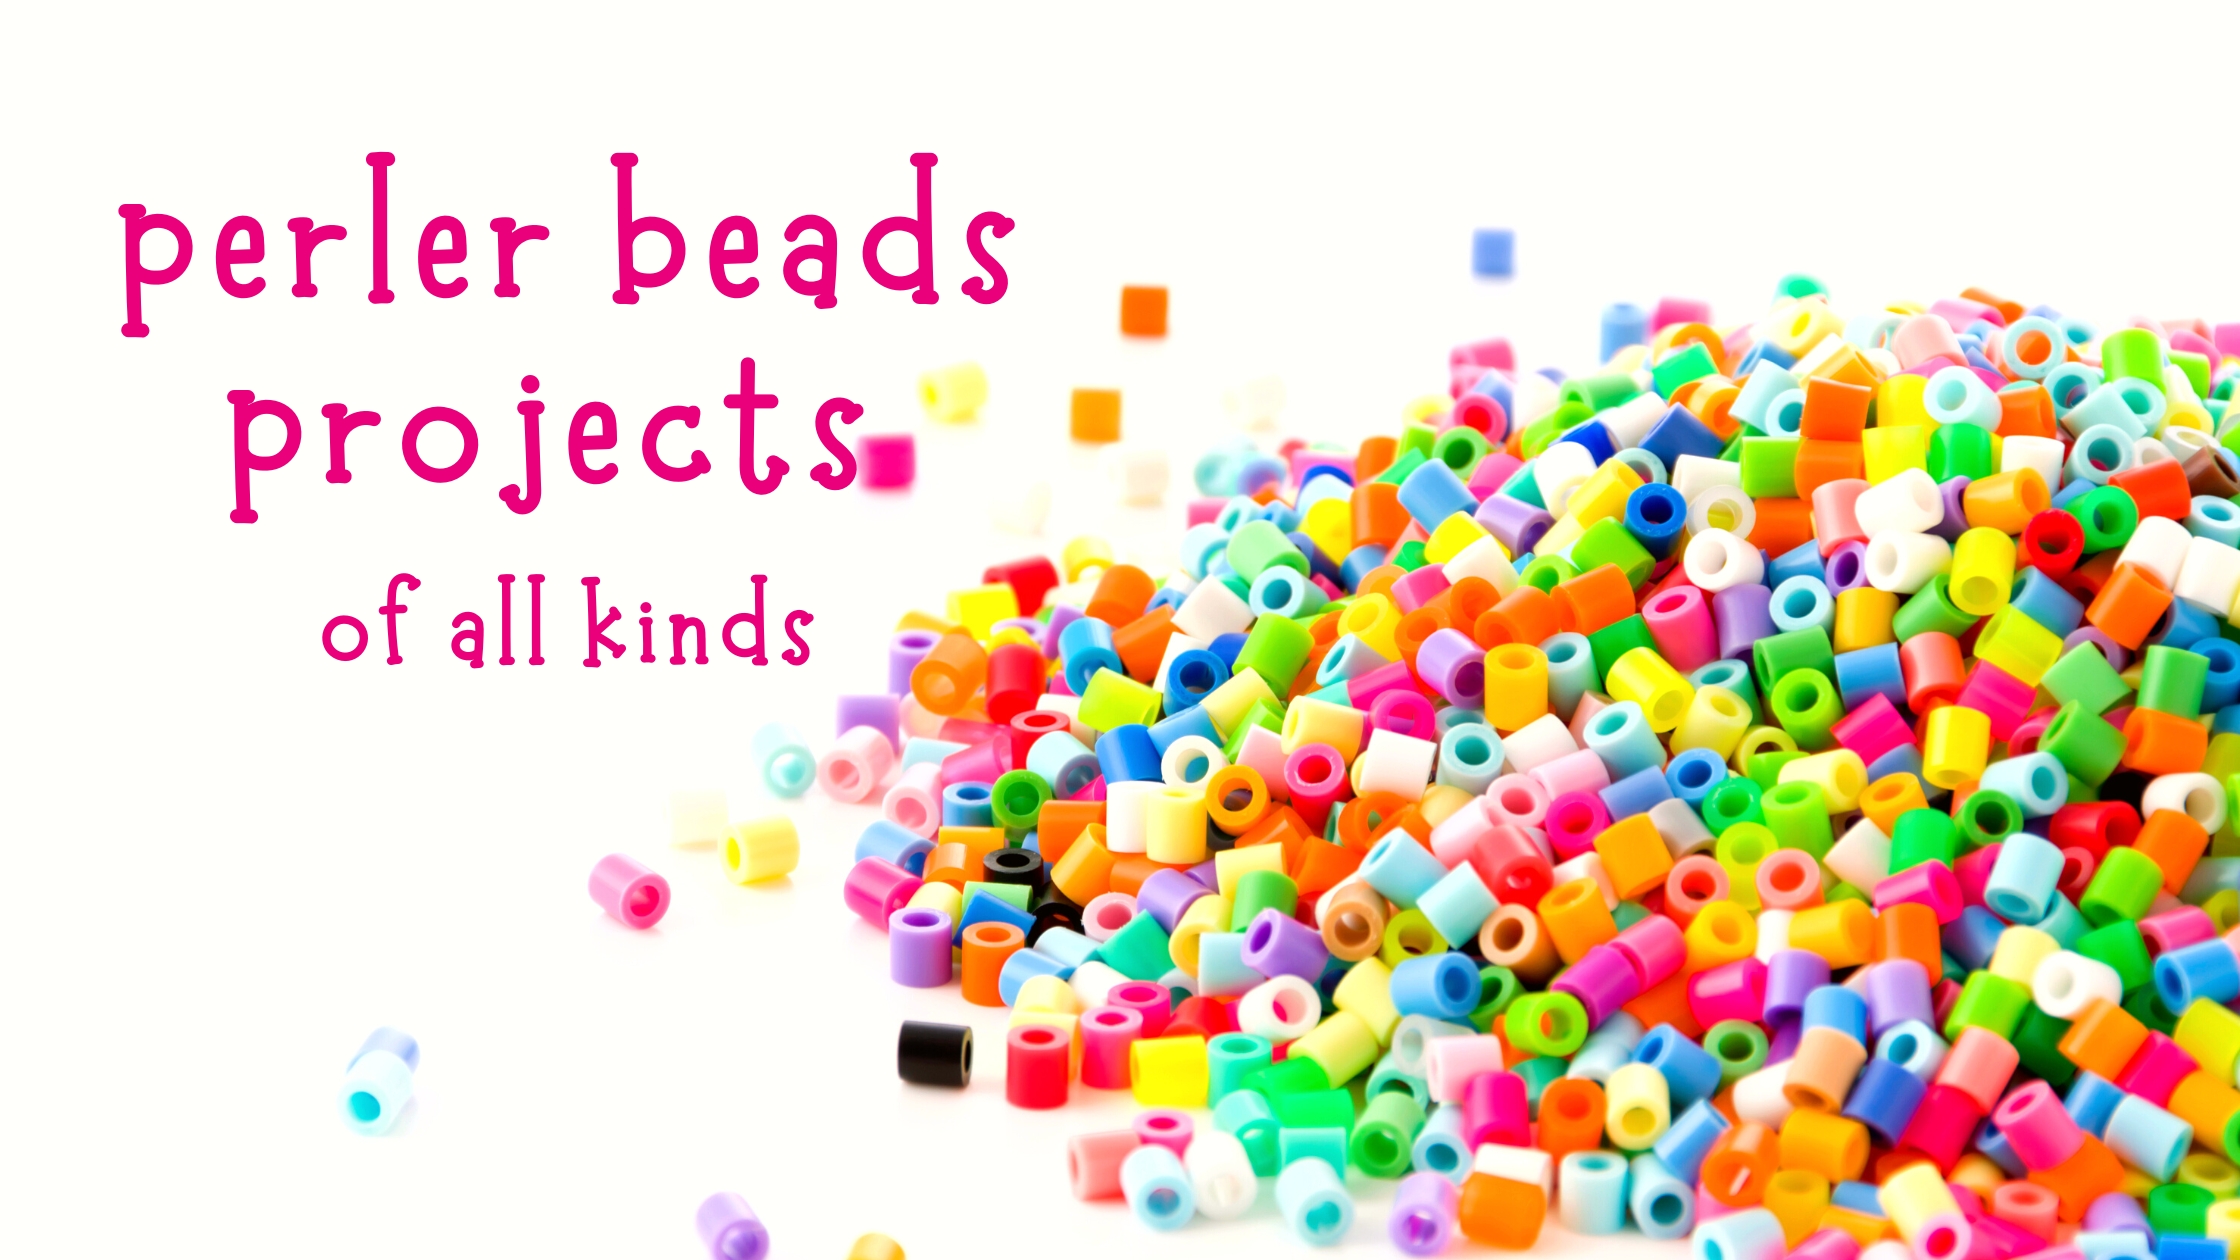 perler beads projects, beads projects, perler beads, beads, fuse beads, fuse bead projects